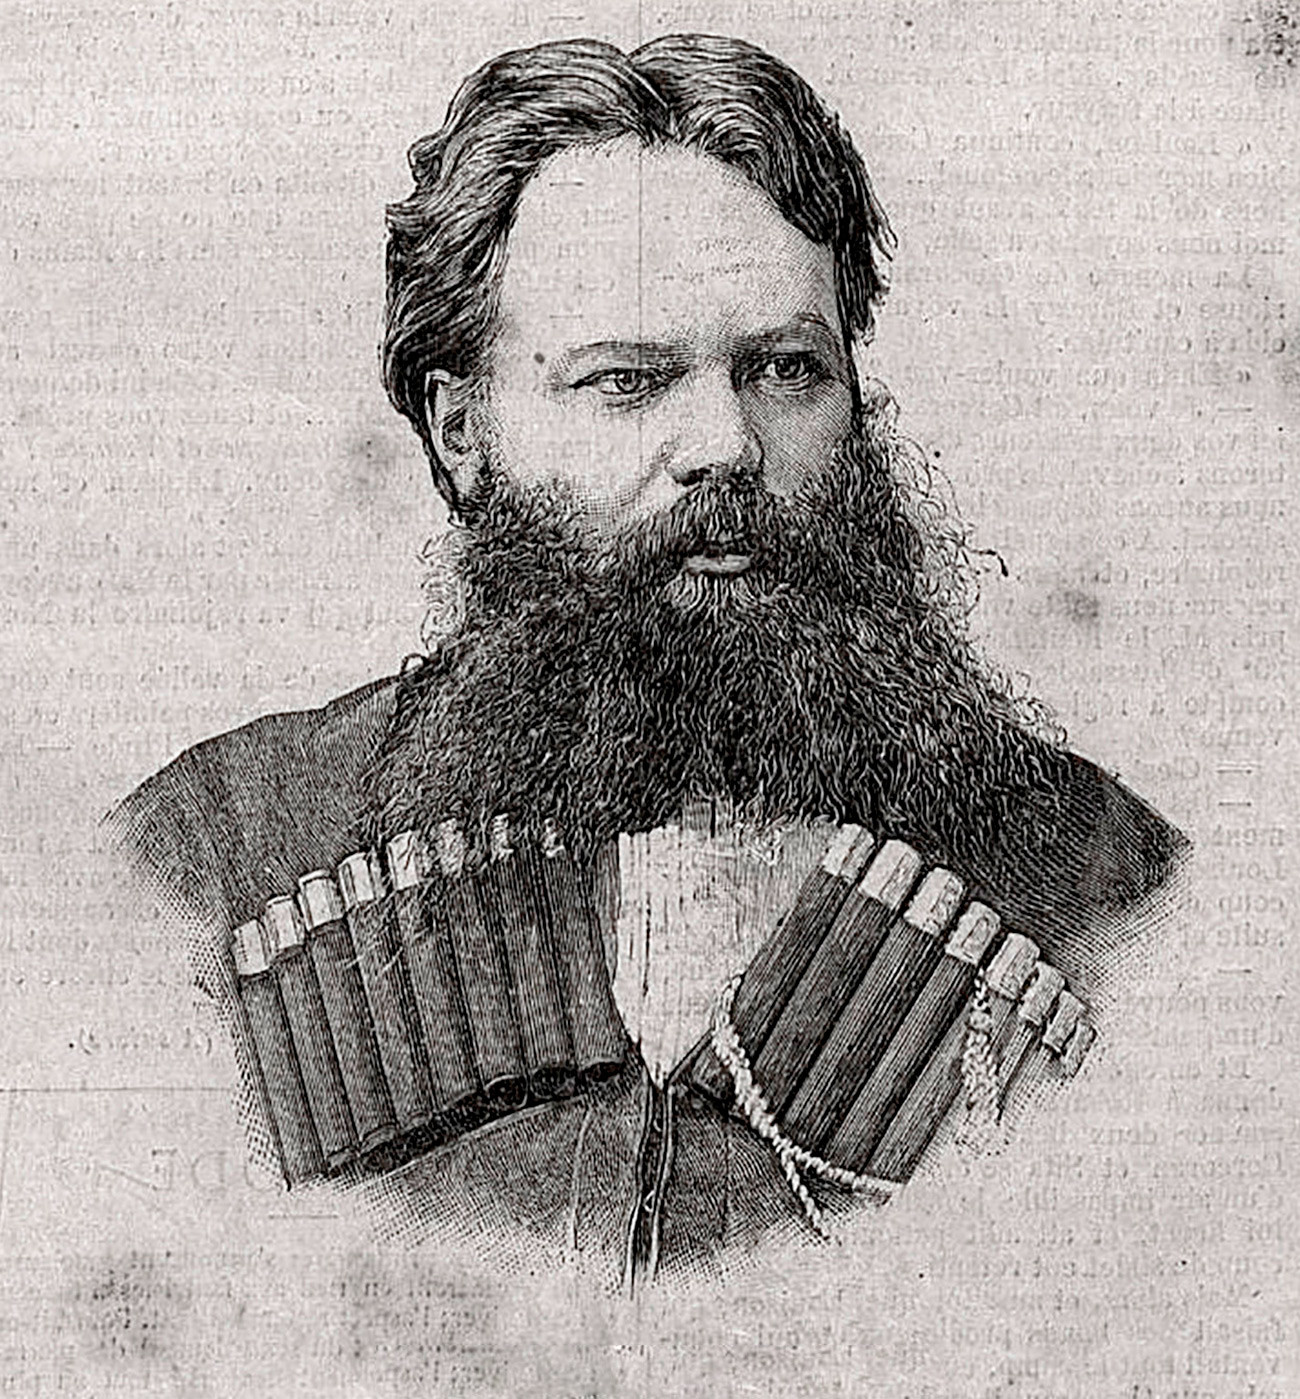 Nikolai Aschinow